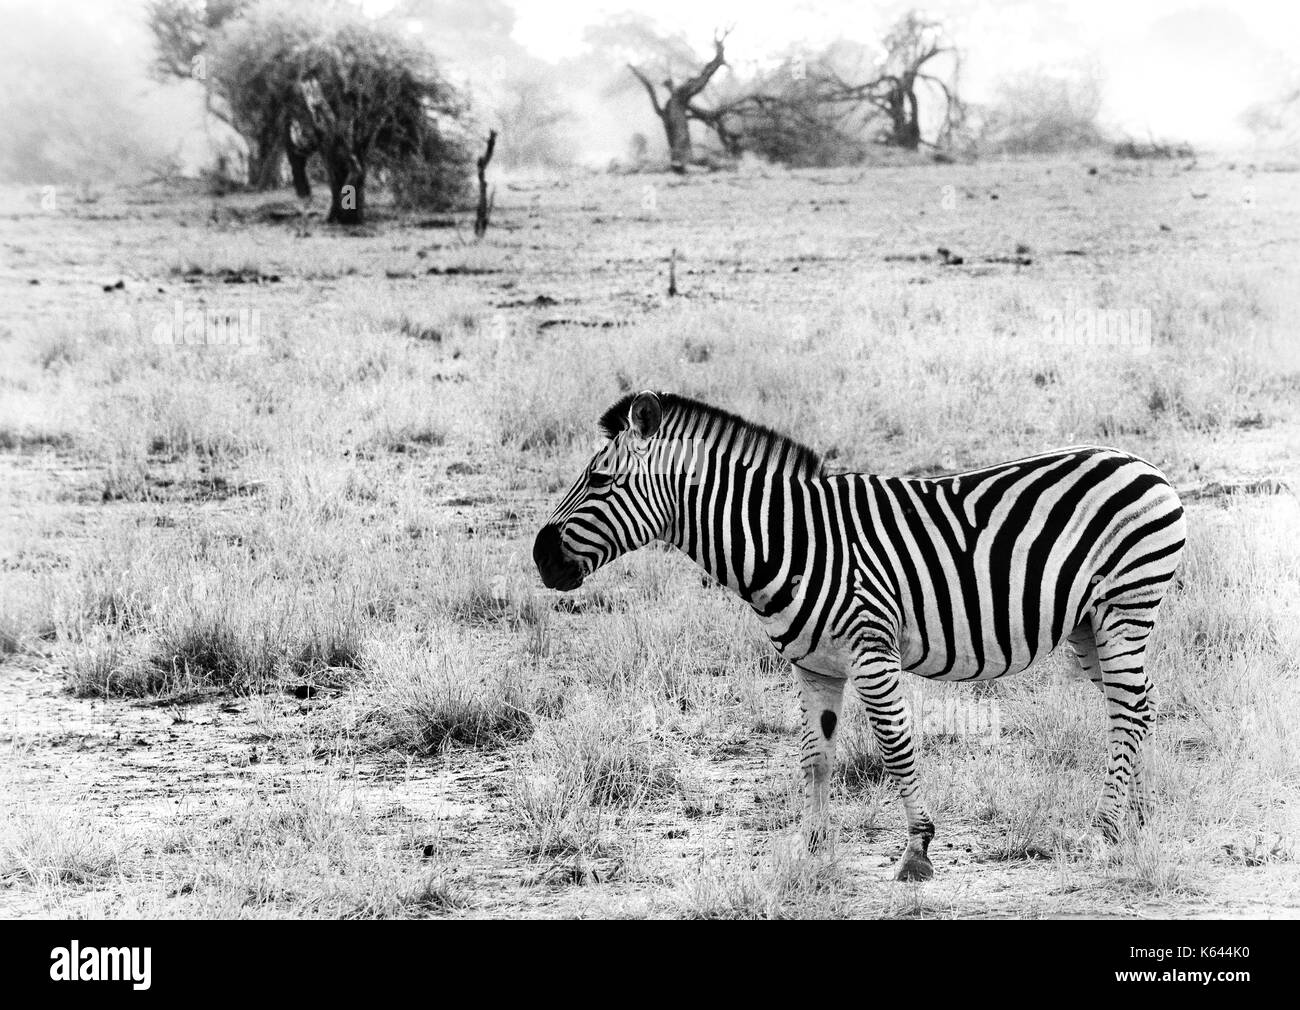 Immagine in bianco e nero di una zebra prese contro il secco arido sfondo della savana africana Foto Stock